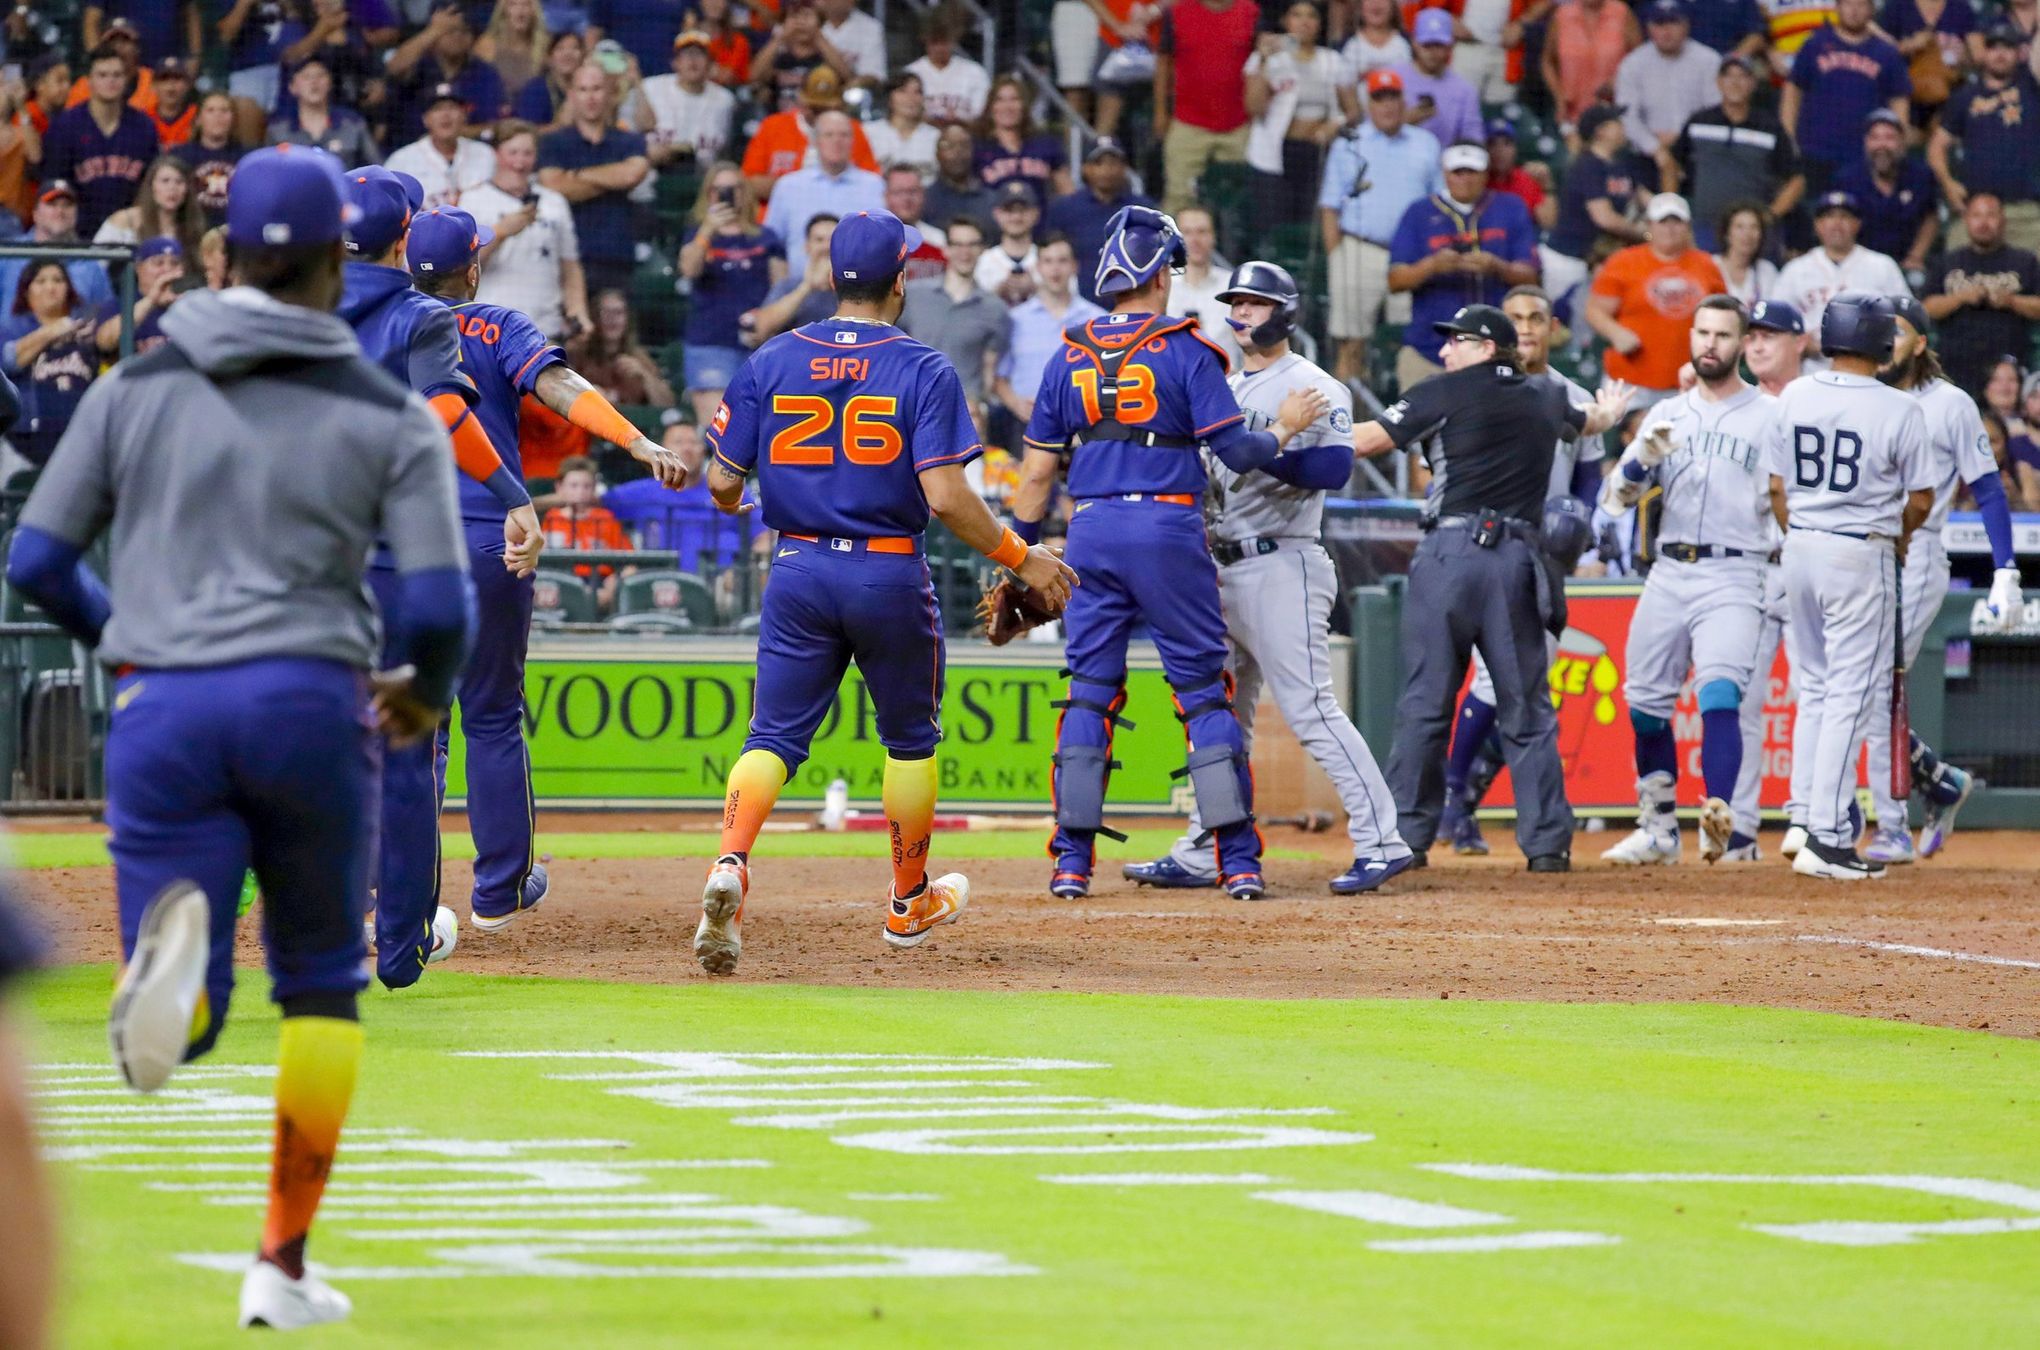 Eugenio Suarez destroys two-run home run against Astros - NBC Sports